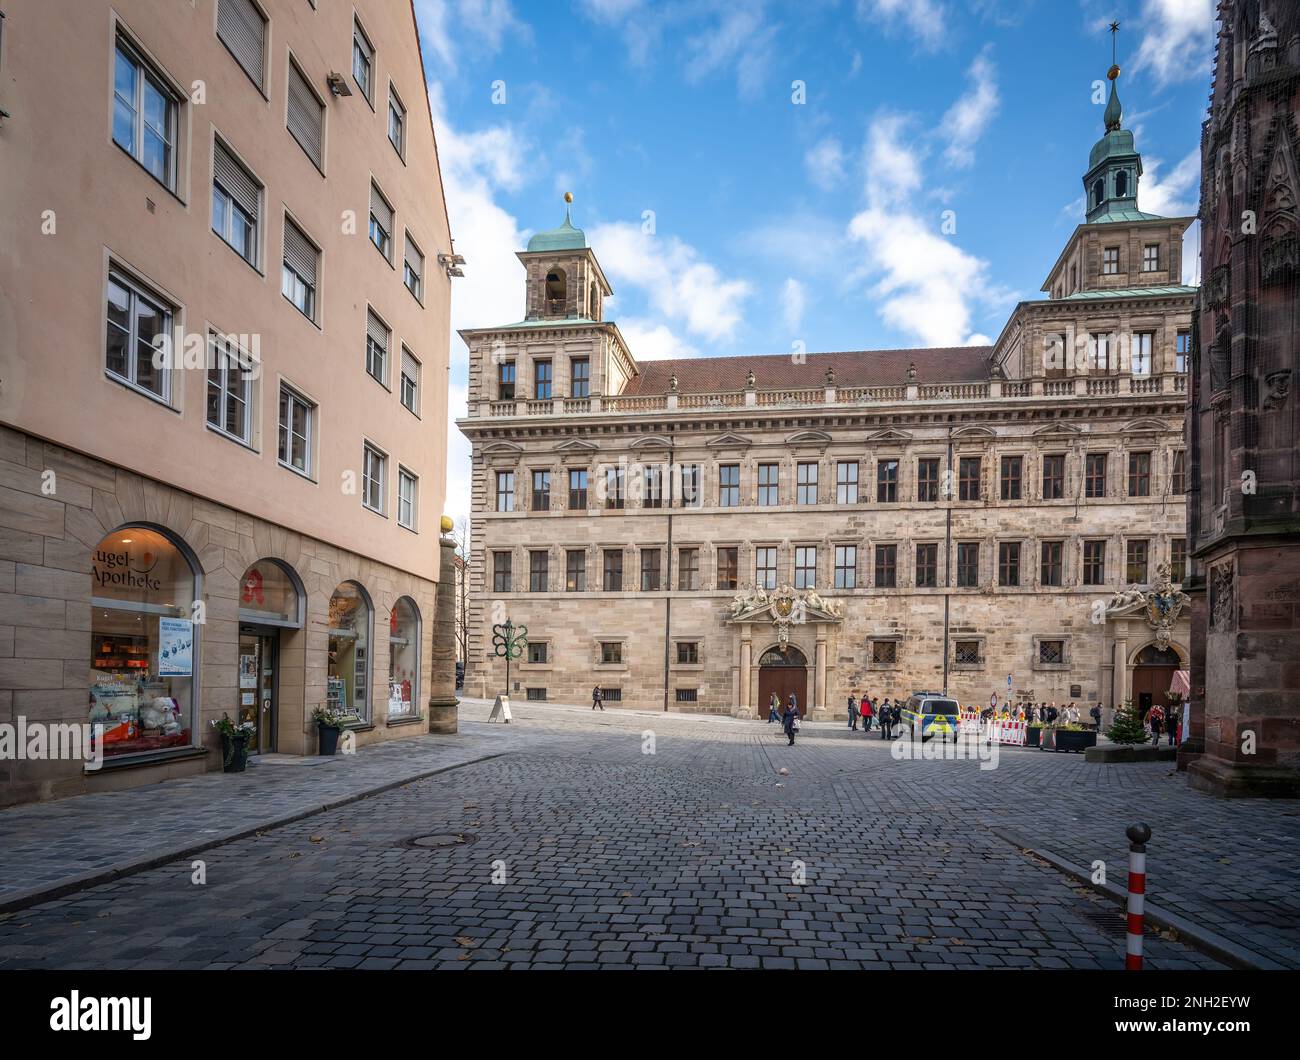 Nuremberg City Hall - Old town hall - Nuremberg, Bavaria, Germany Stock Photo